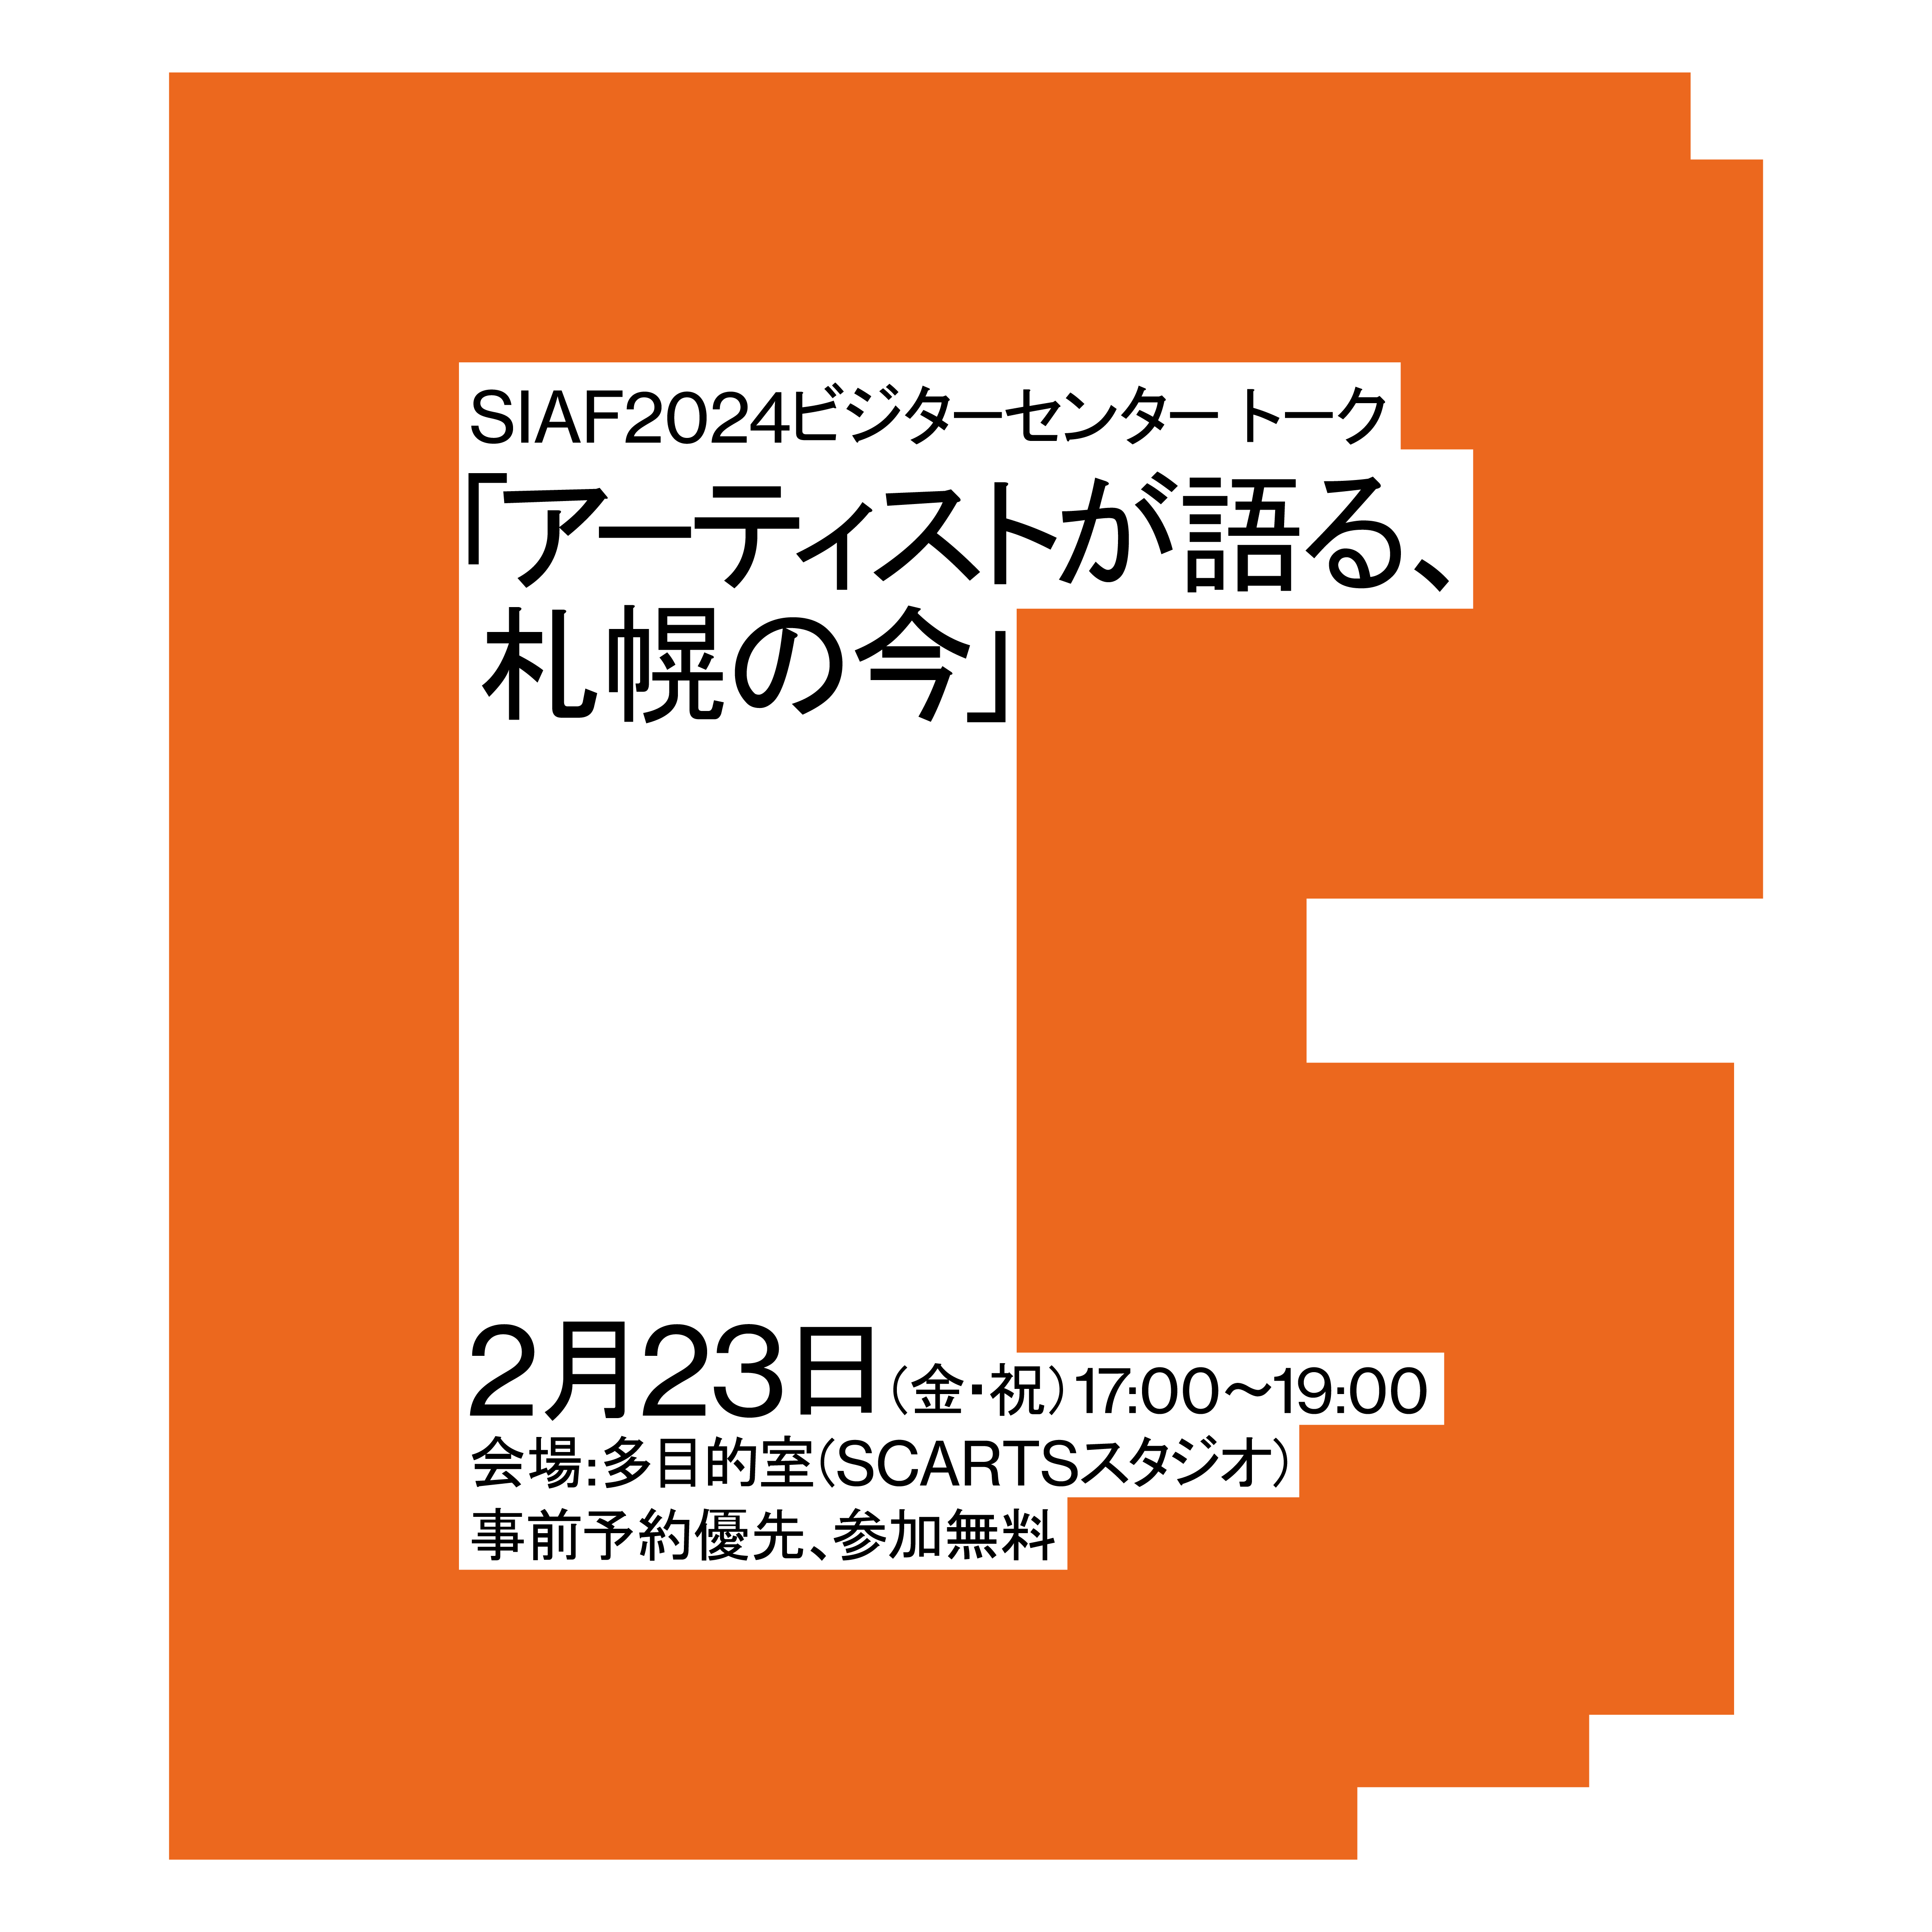 SIAF2024ビジターセンタートーク「アーティストが語る、札幌の今」イメージ